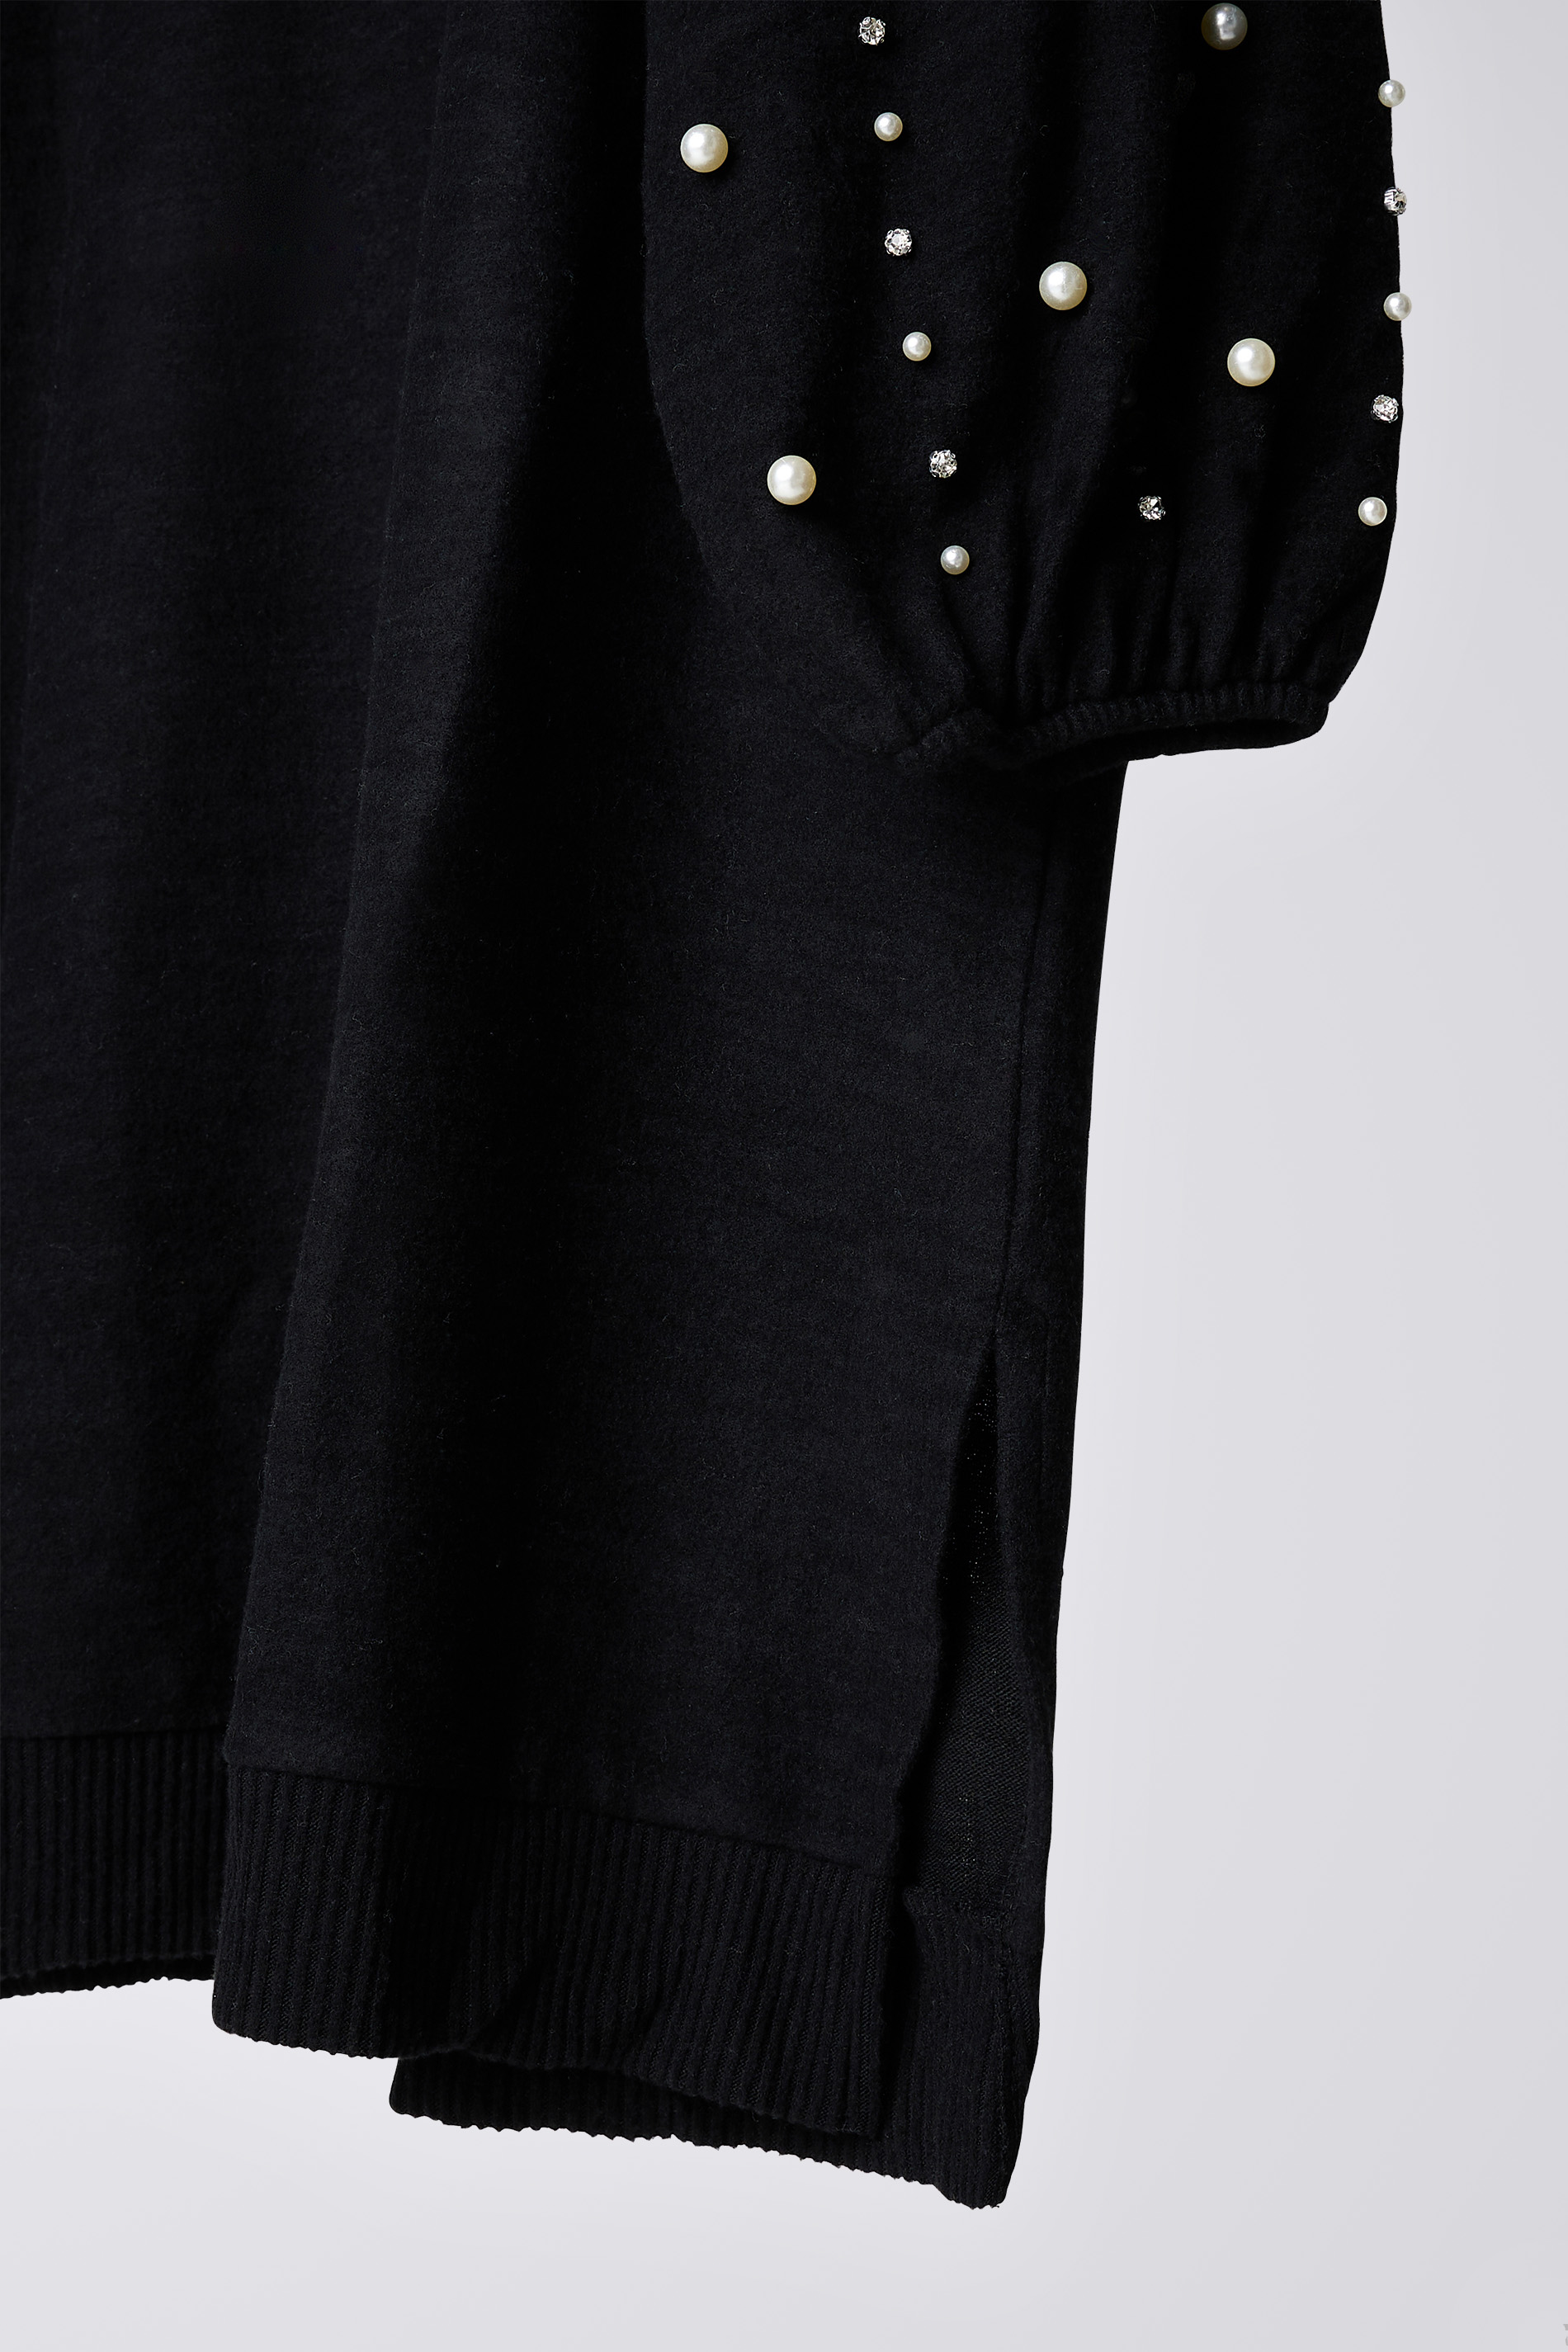 EVANS Plus Size Black Pearl Embellished Jumper Dress | Evans